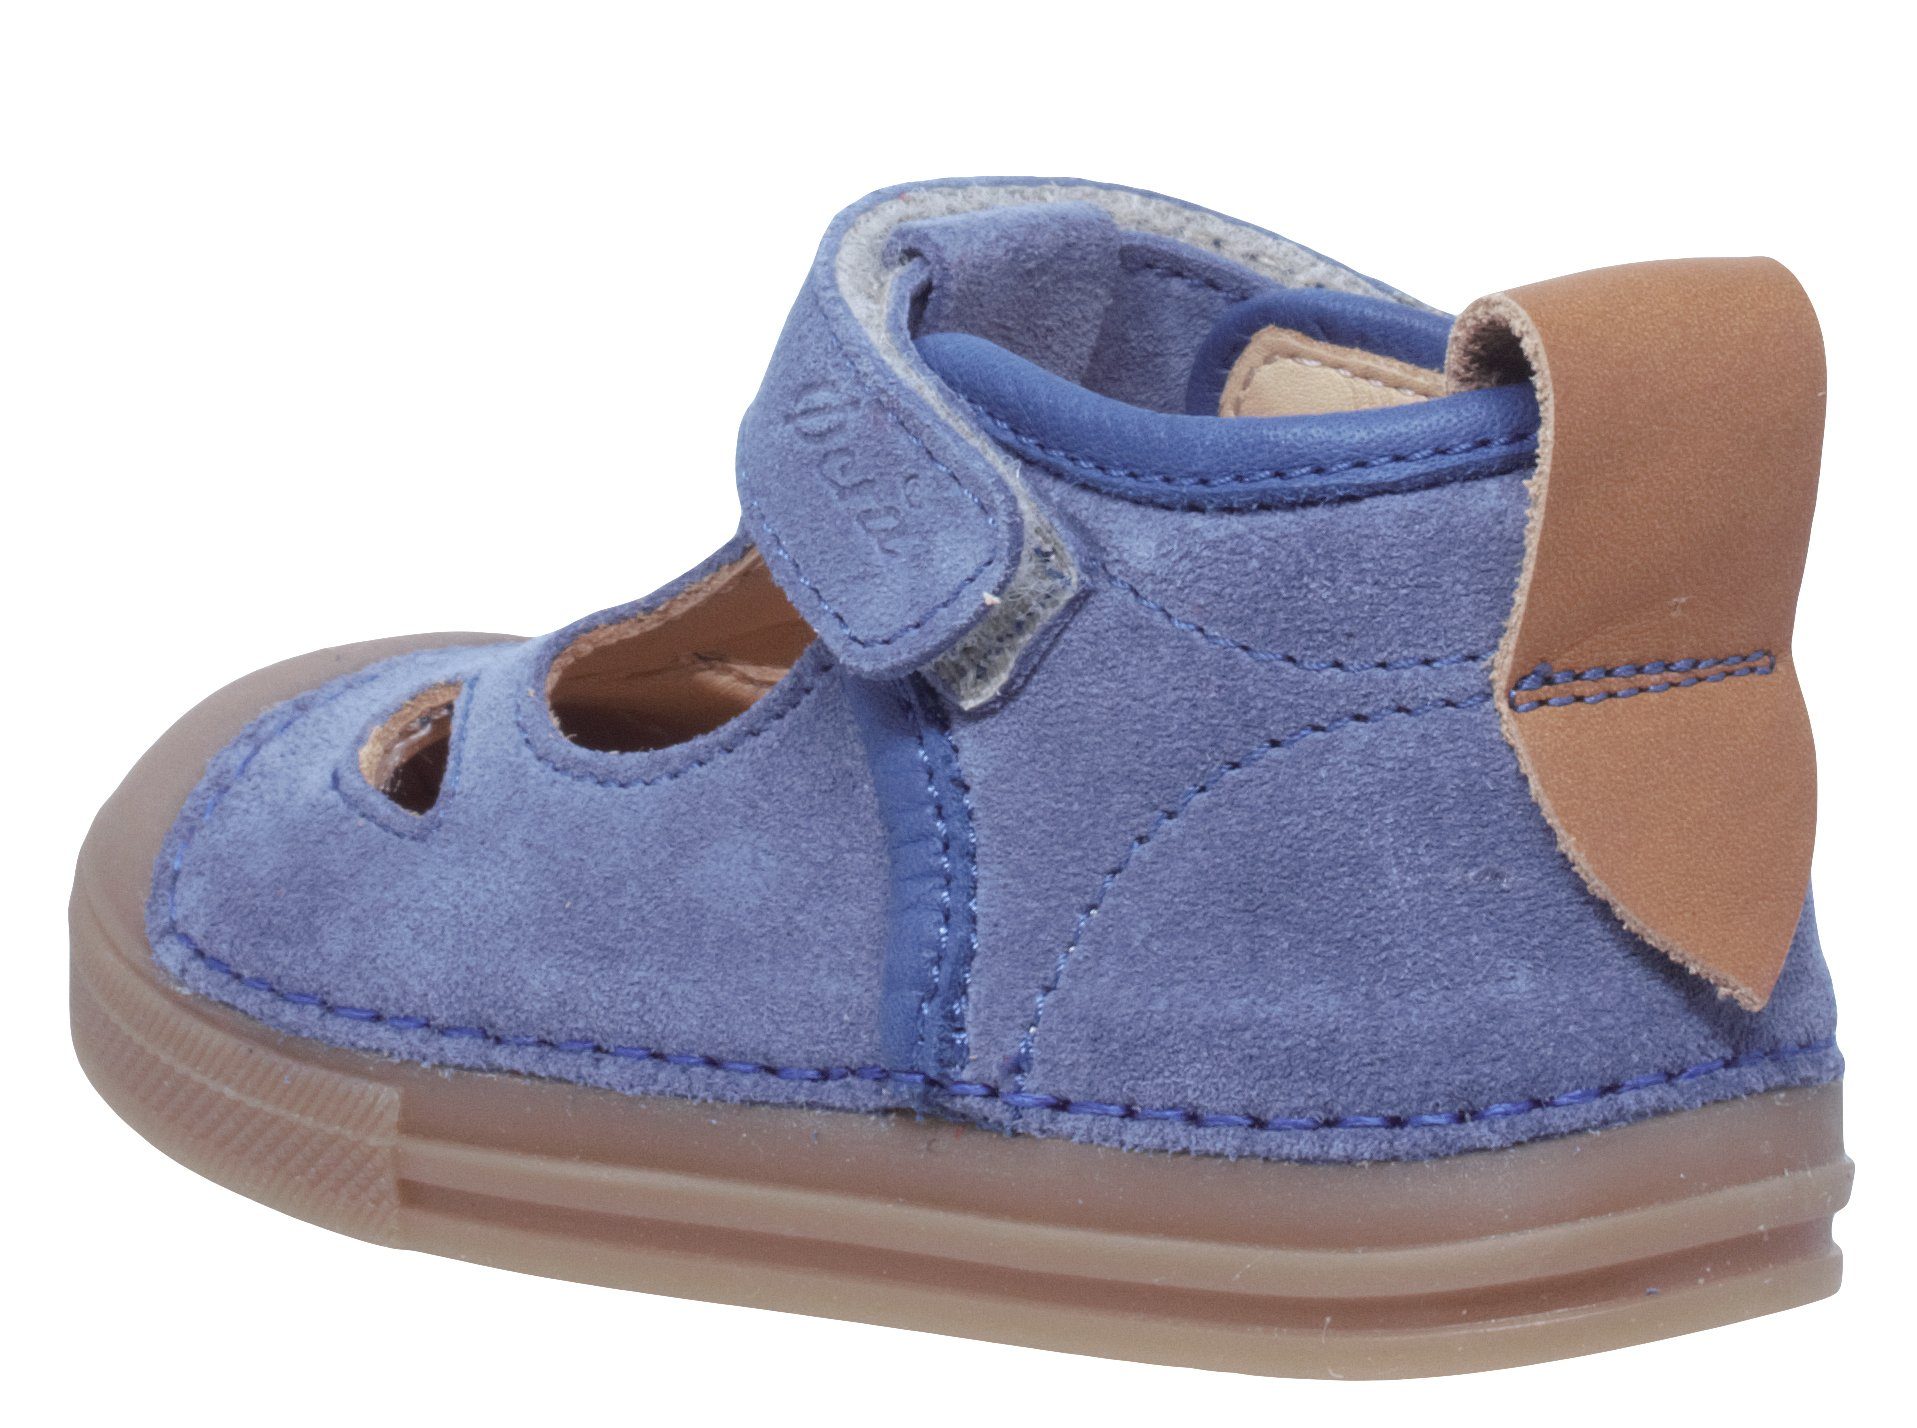 Ocra Lauflernschuhe von Klett Sandalette 622 Leder Ocra Blau Baby Sandalen